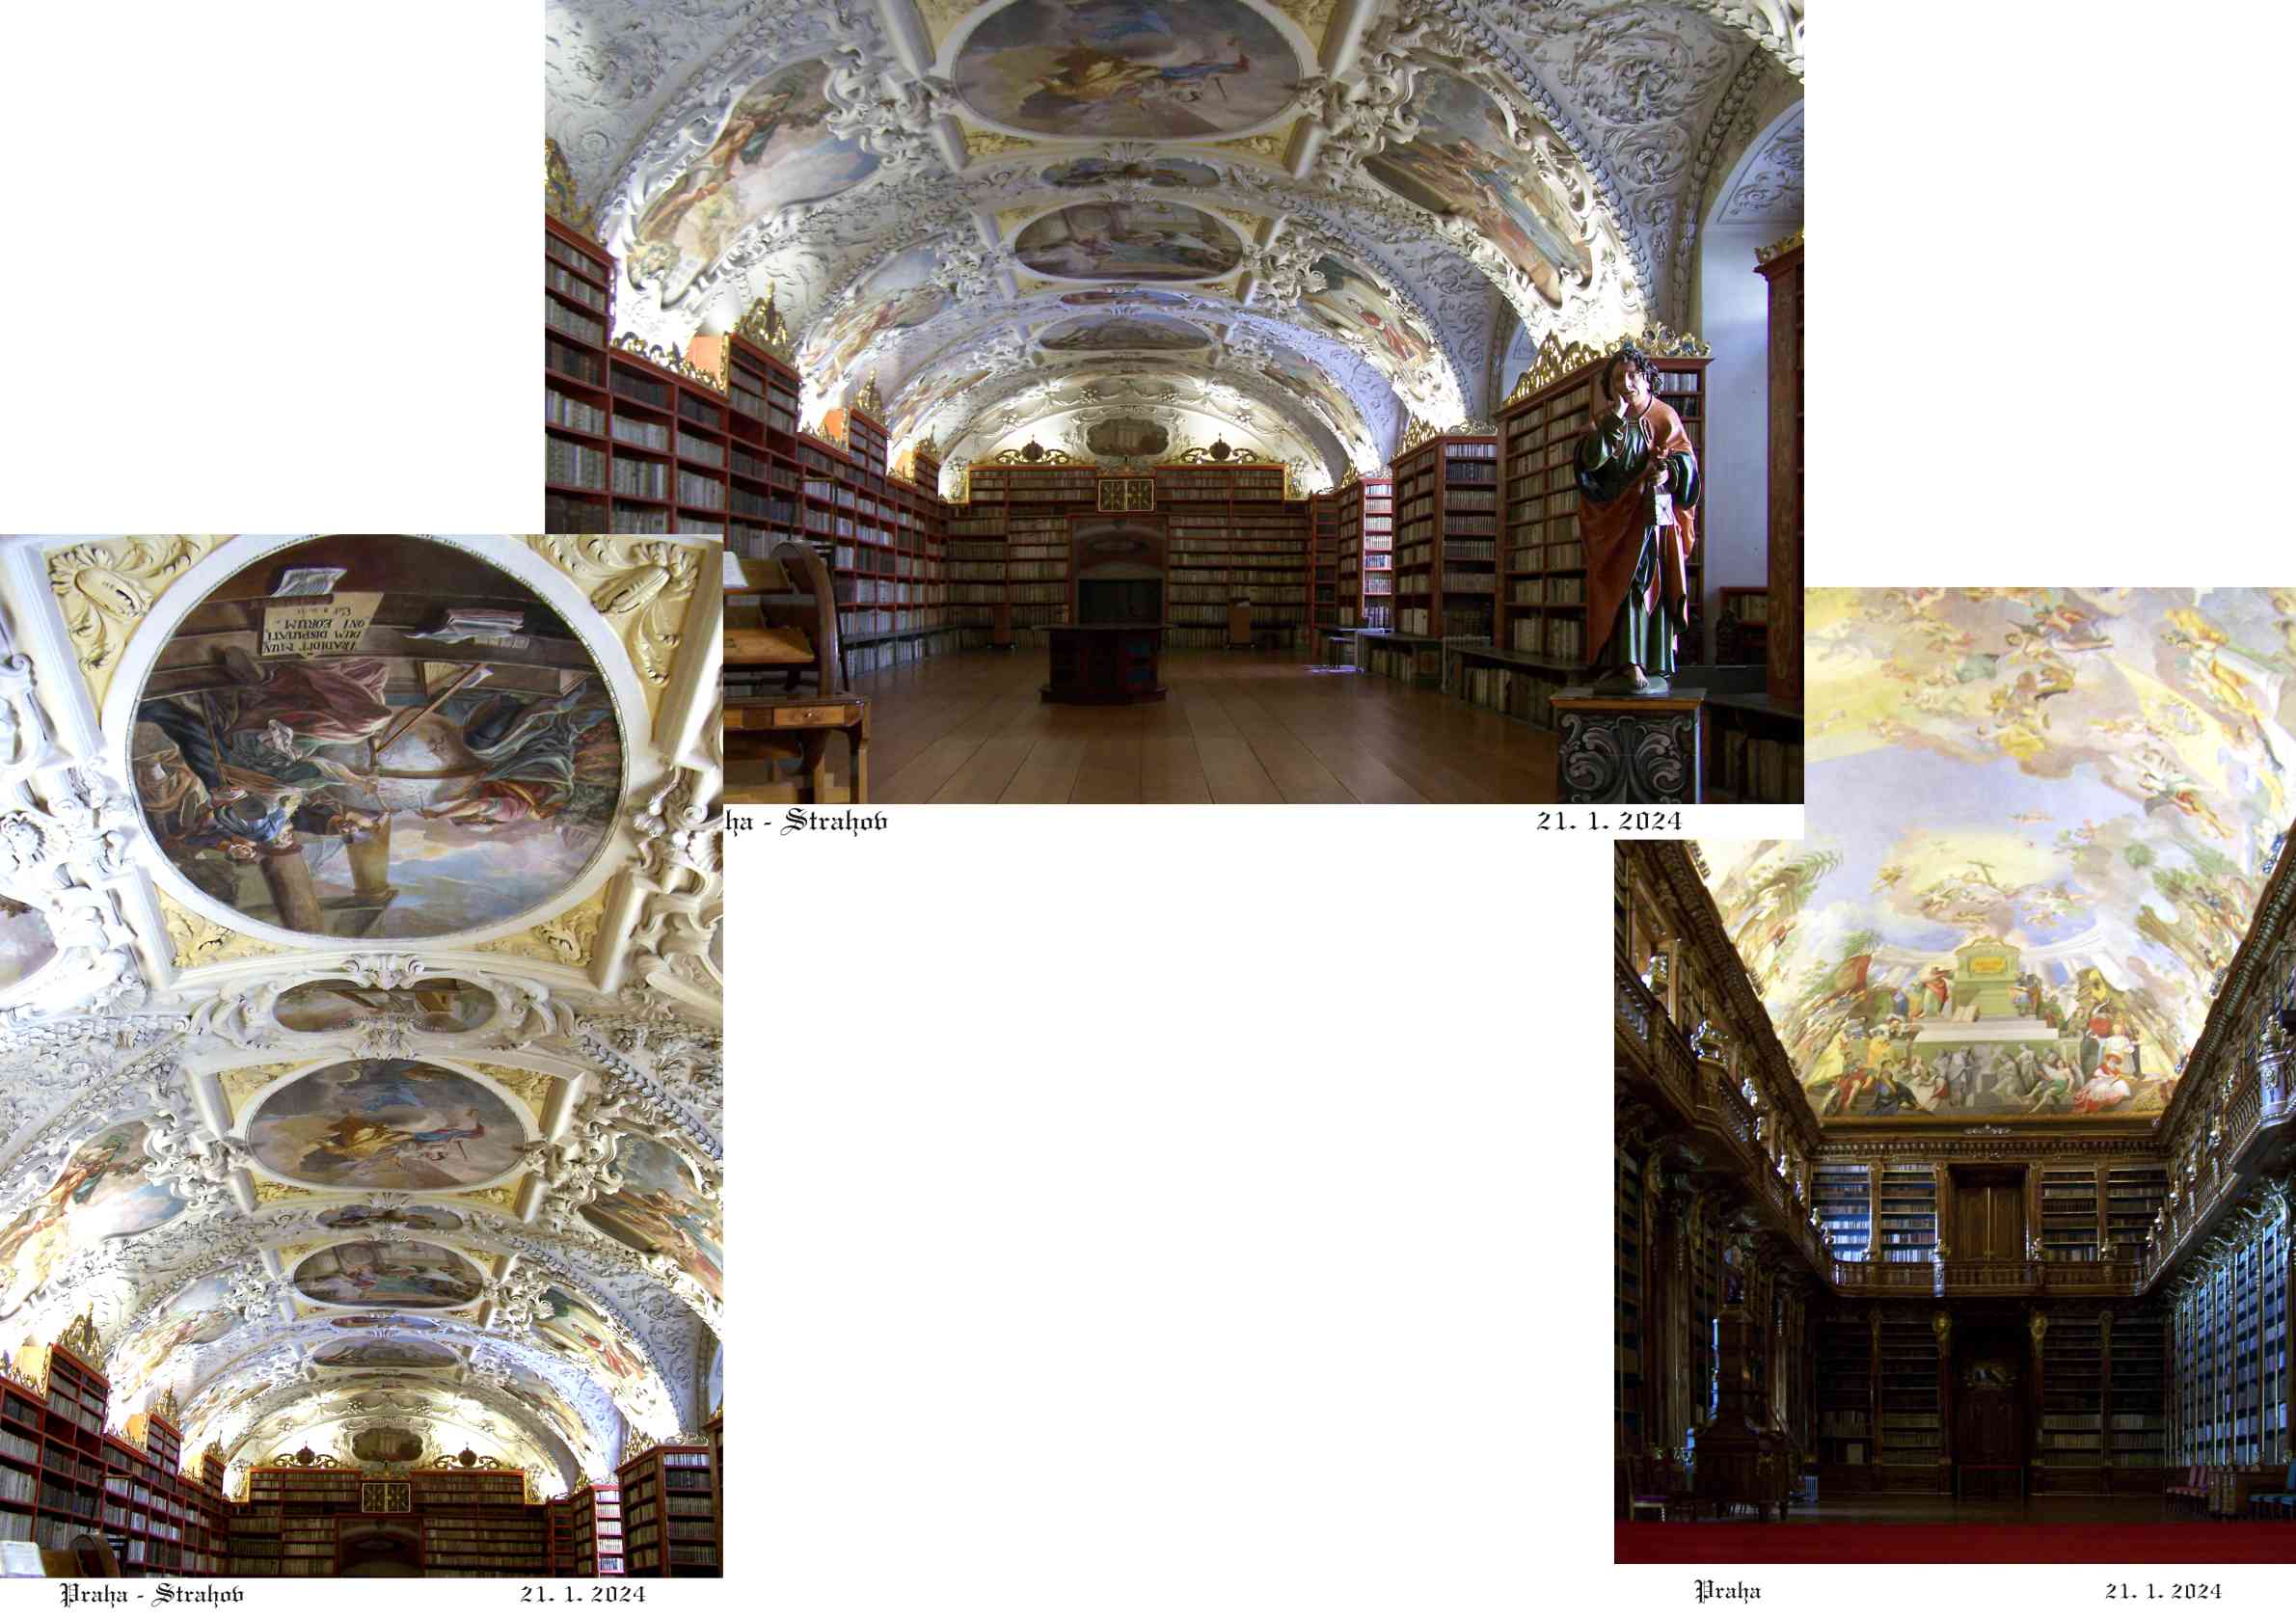 Krásou umělecké práce vynikají oba historické klášterní sály.